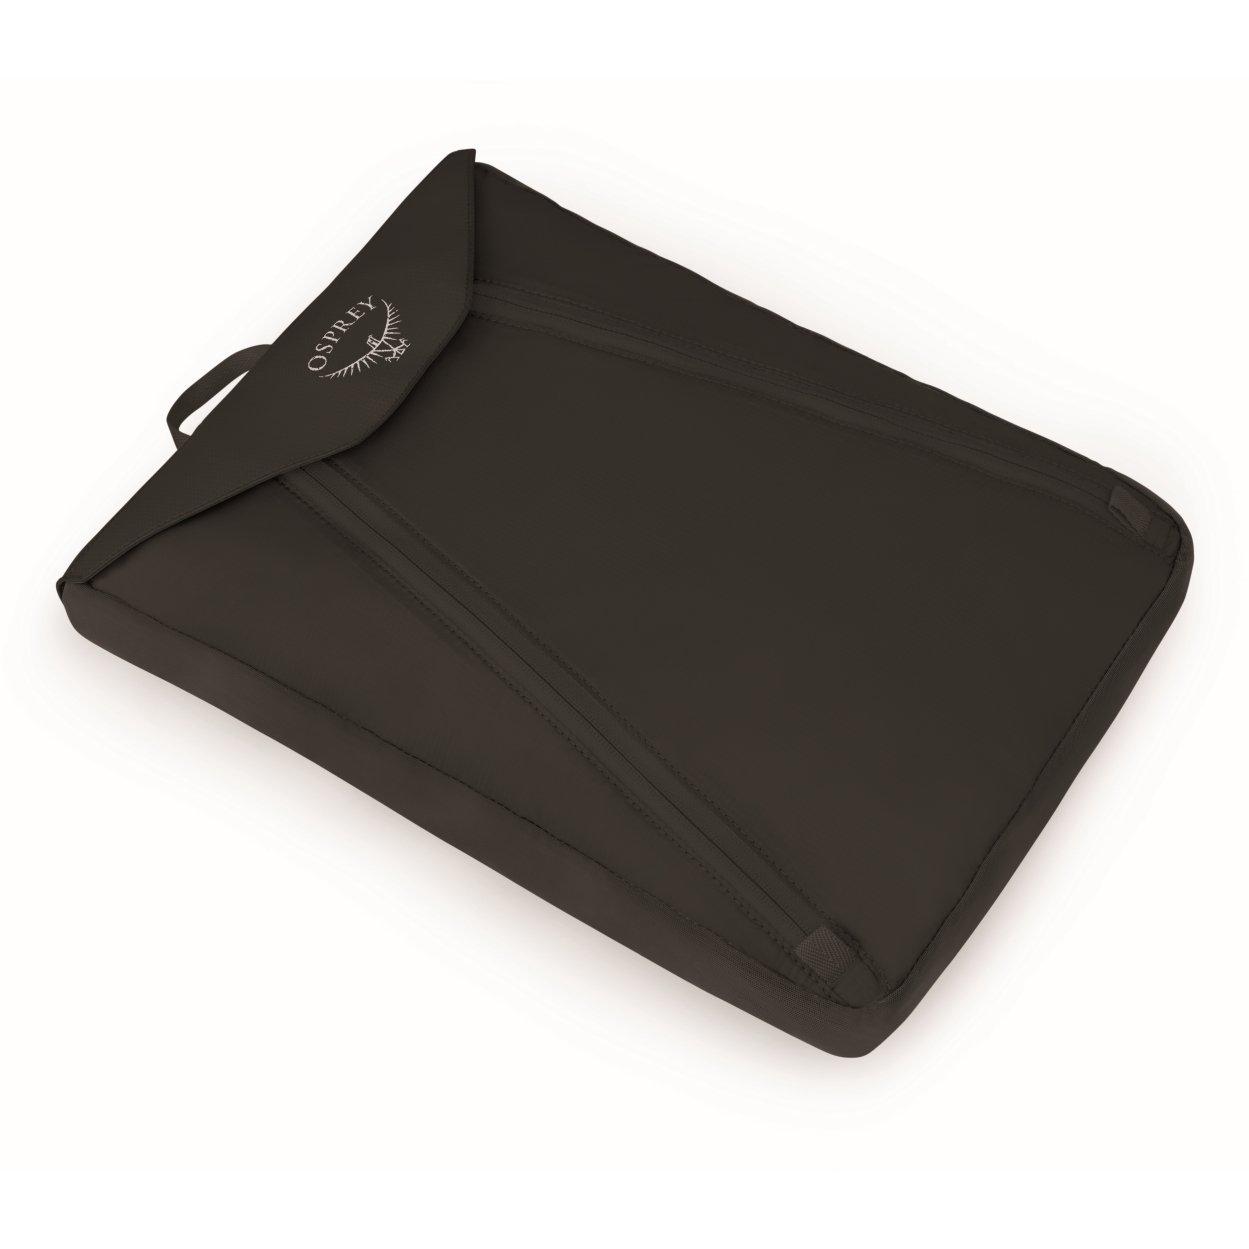 Produktbild von Osprey Ultralight Garment Folder - Hemdtasche - Schwarz